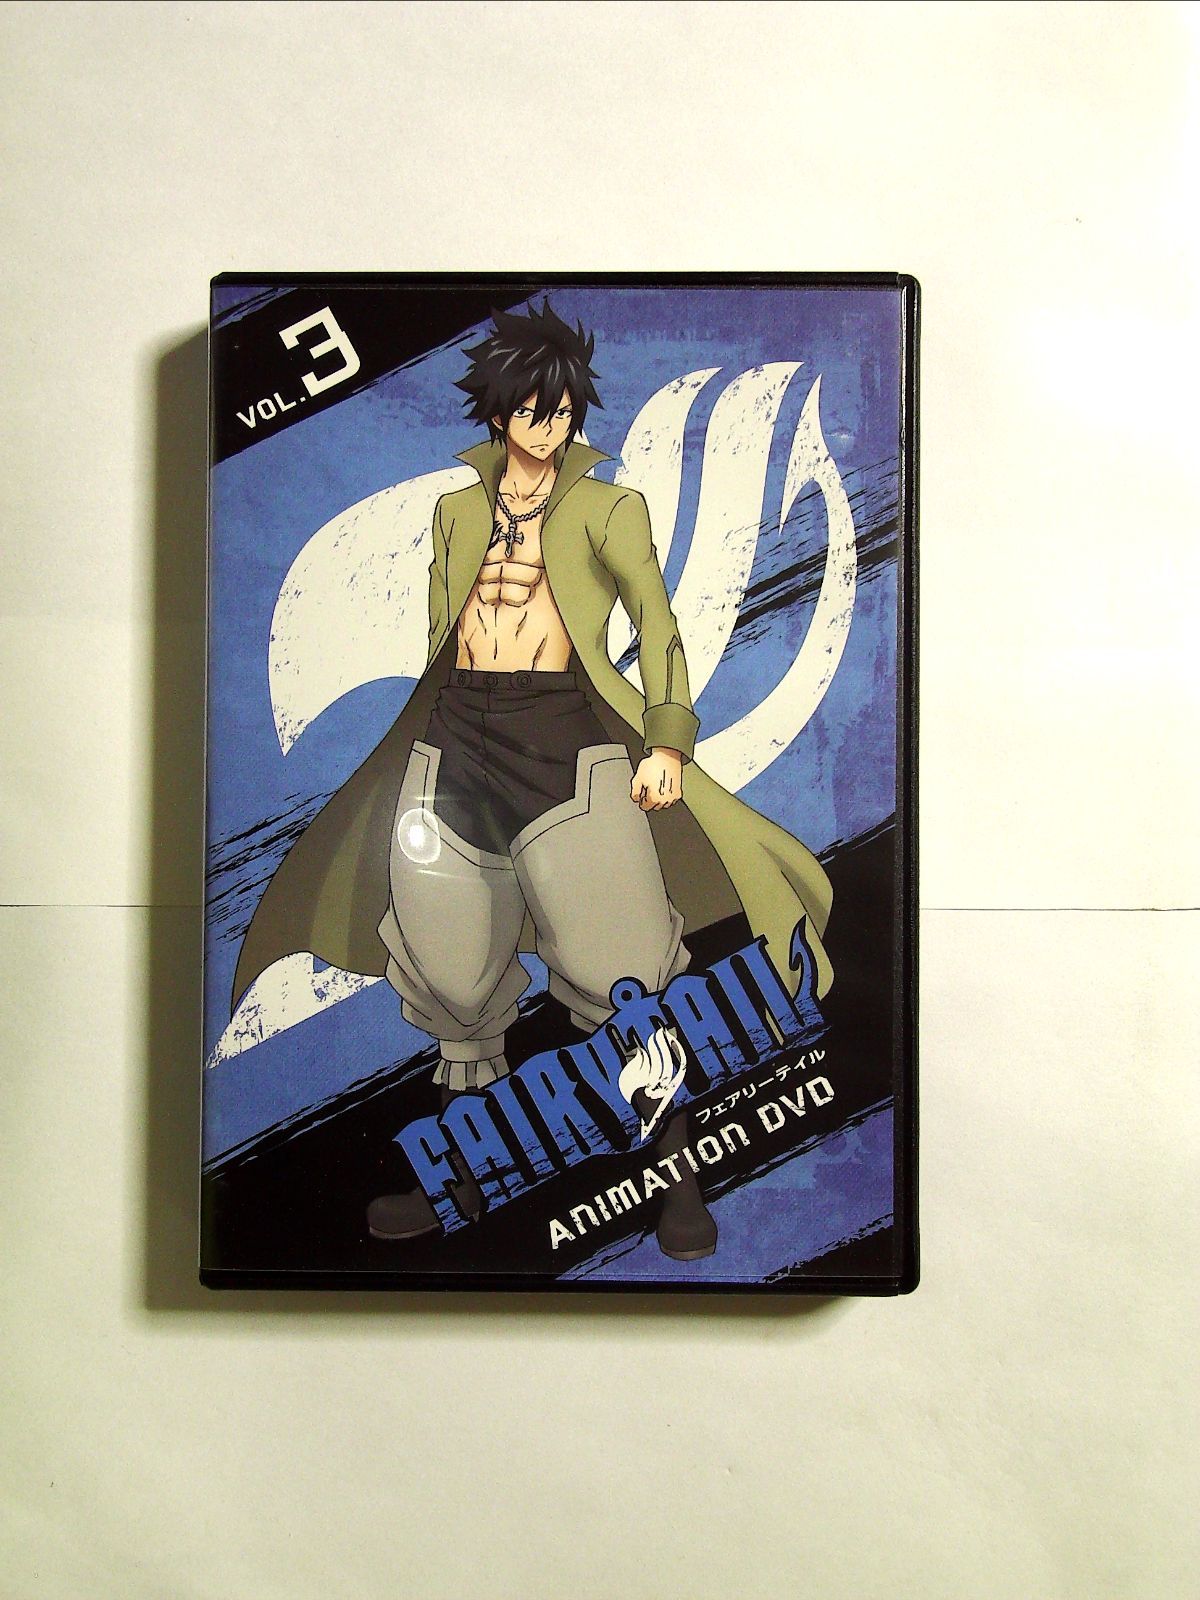 月刊 FAIRY TAIL コレクション Vol.3 DVD